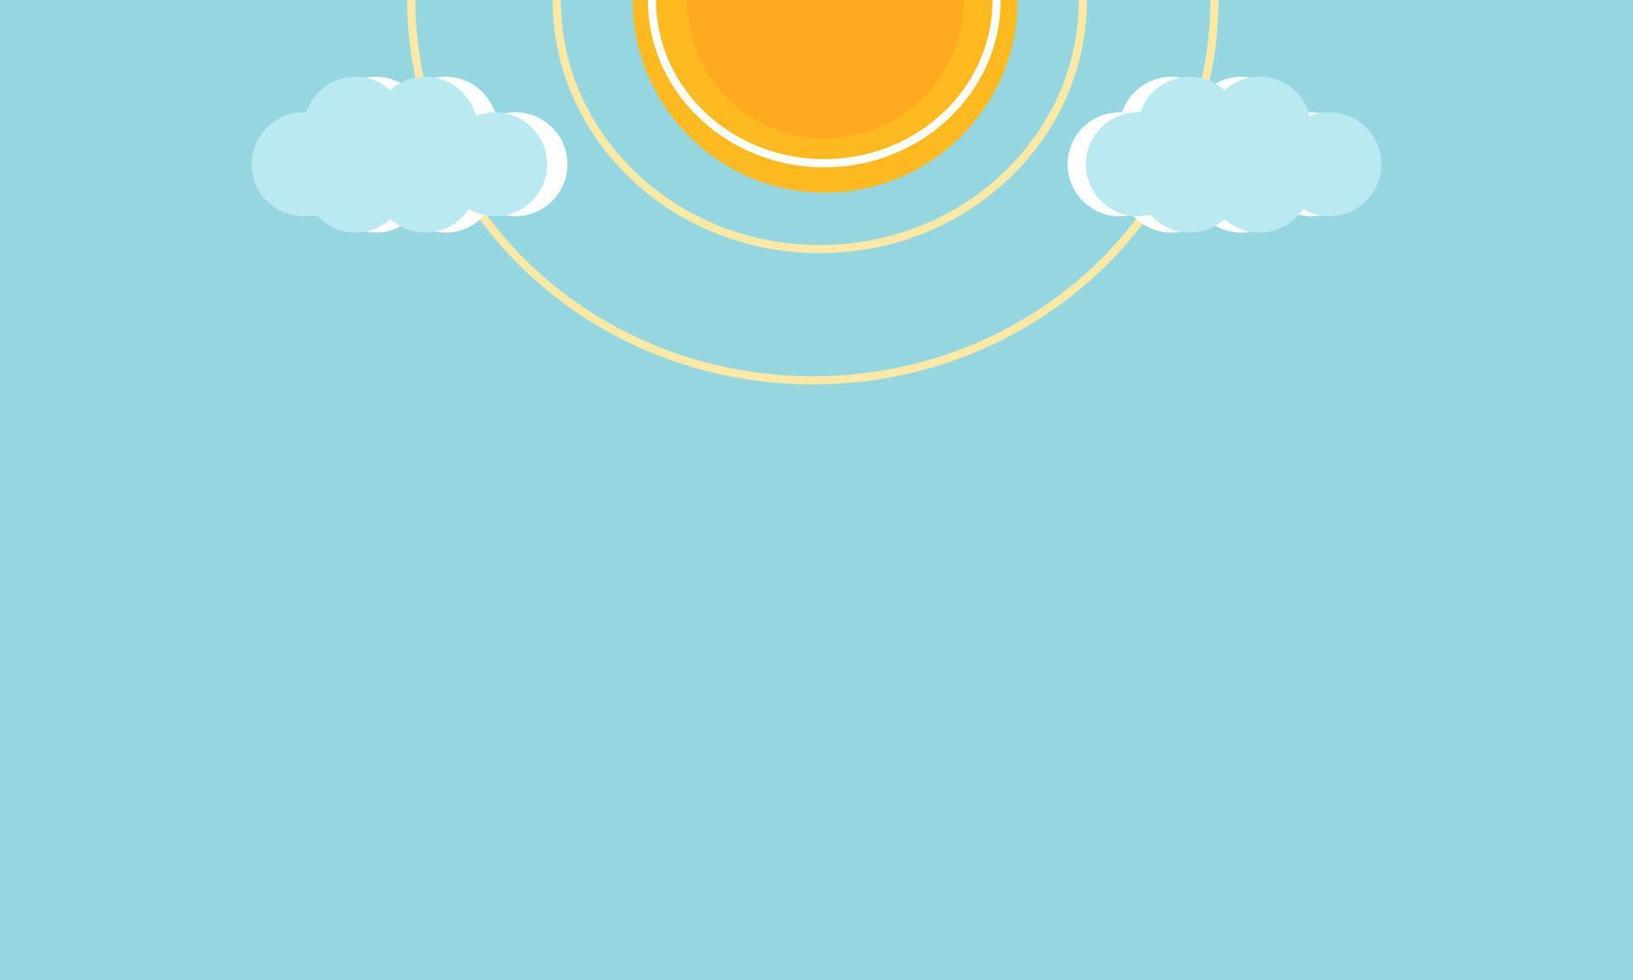 helder blauw zonneschijn achtergrond met zon en wolken, vlak vector illustratie.